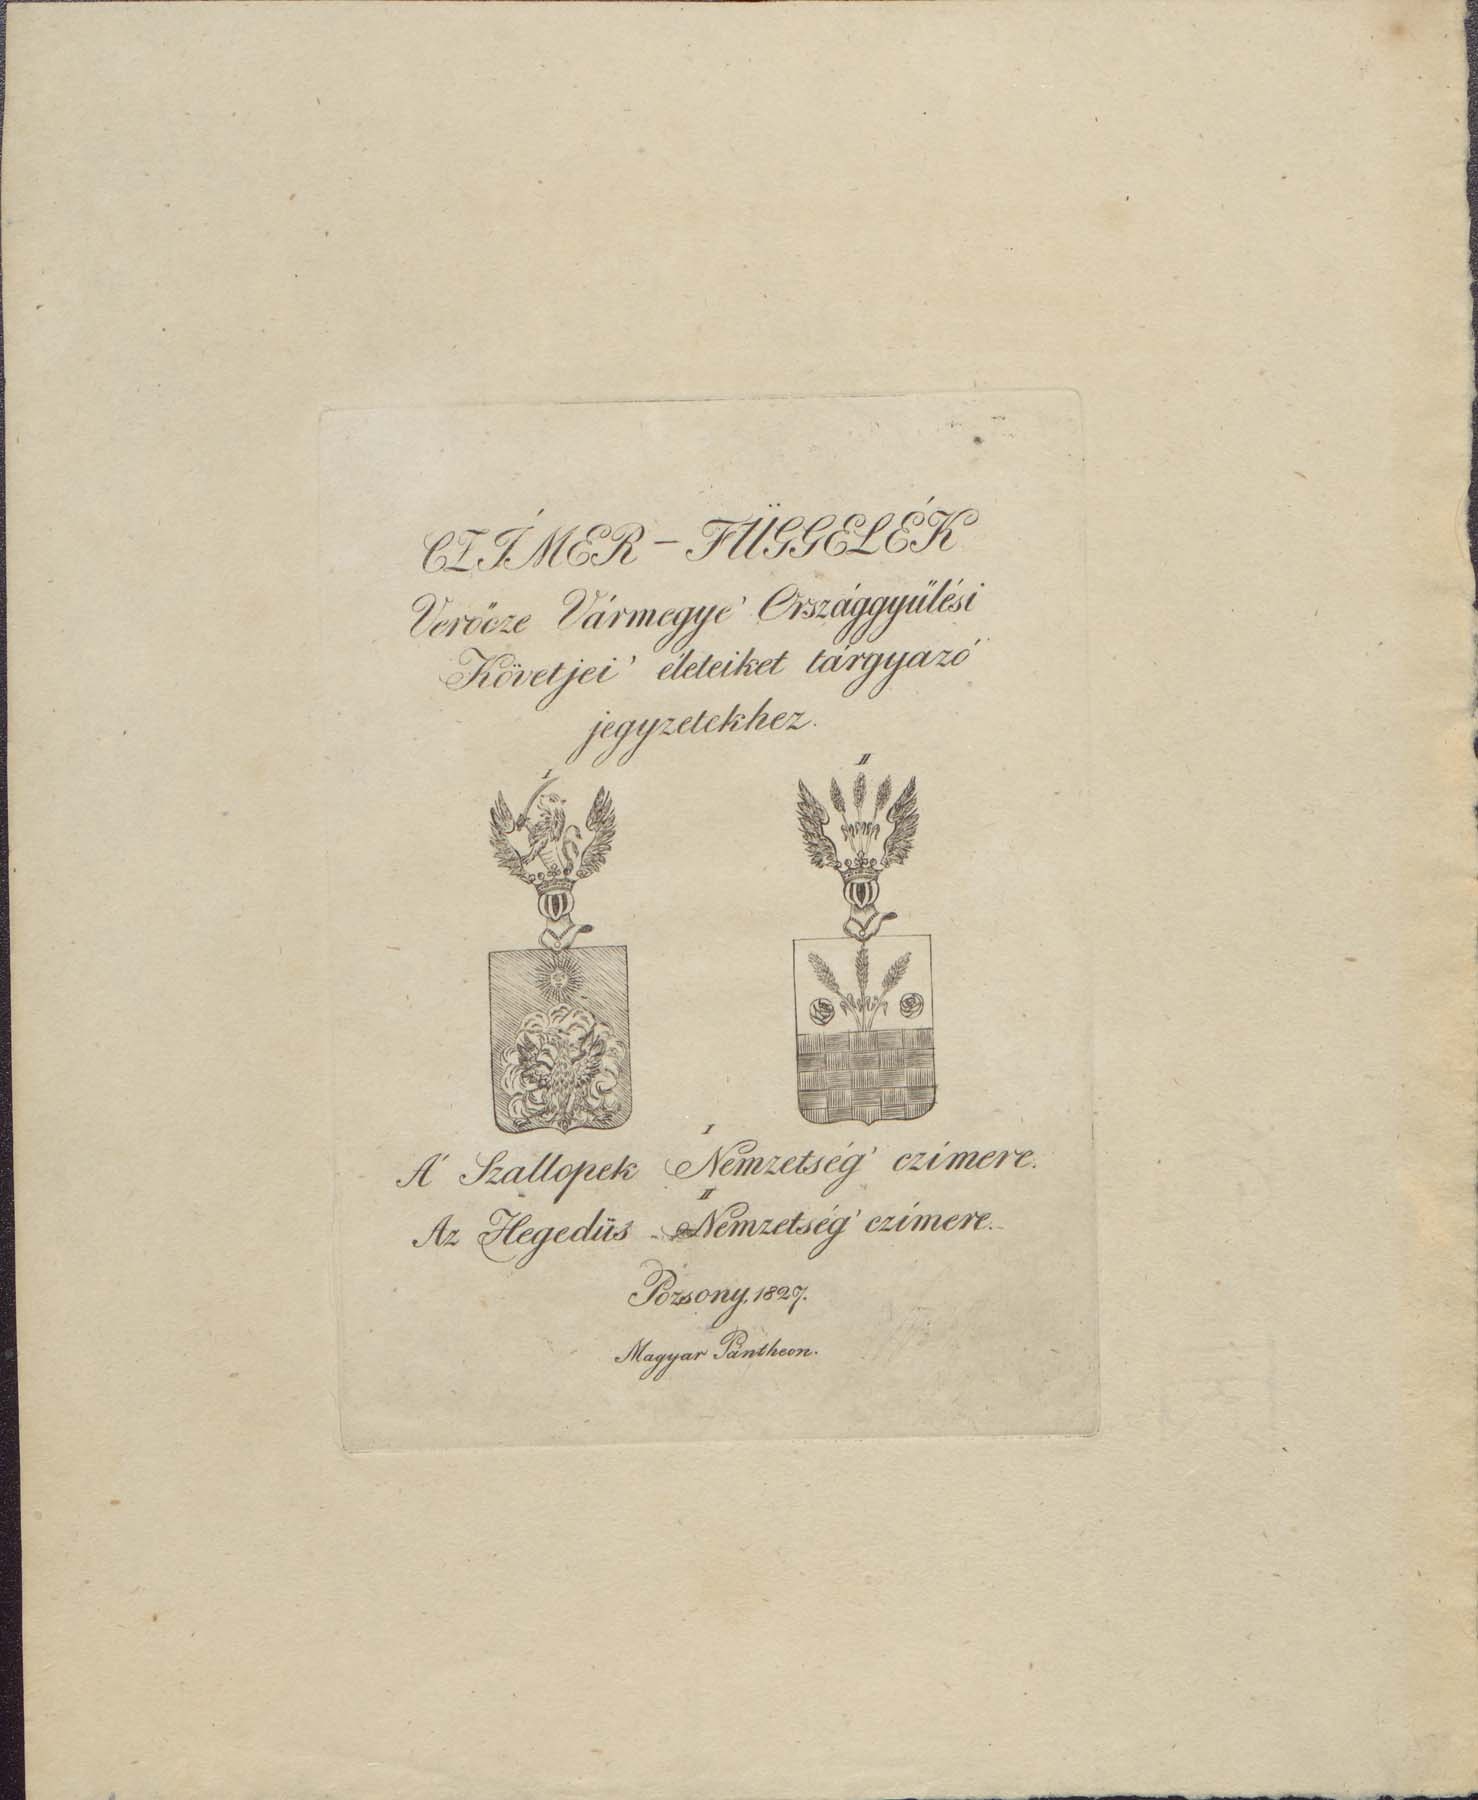 Sztallopek / Hegedüs nemzetség címere (Pannonhalma Főapátsági Múzeum CC BY-NC-SA)